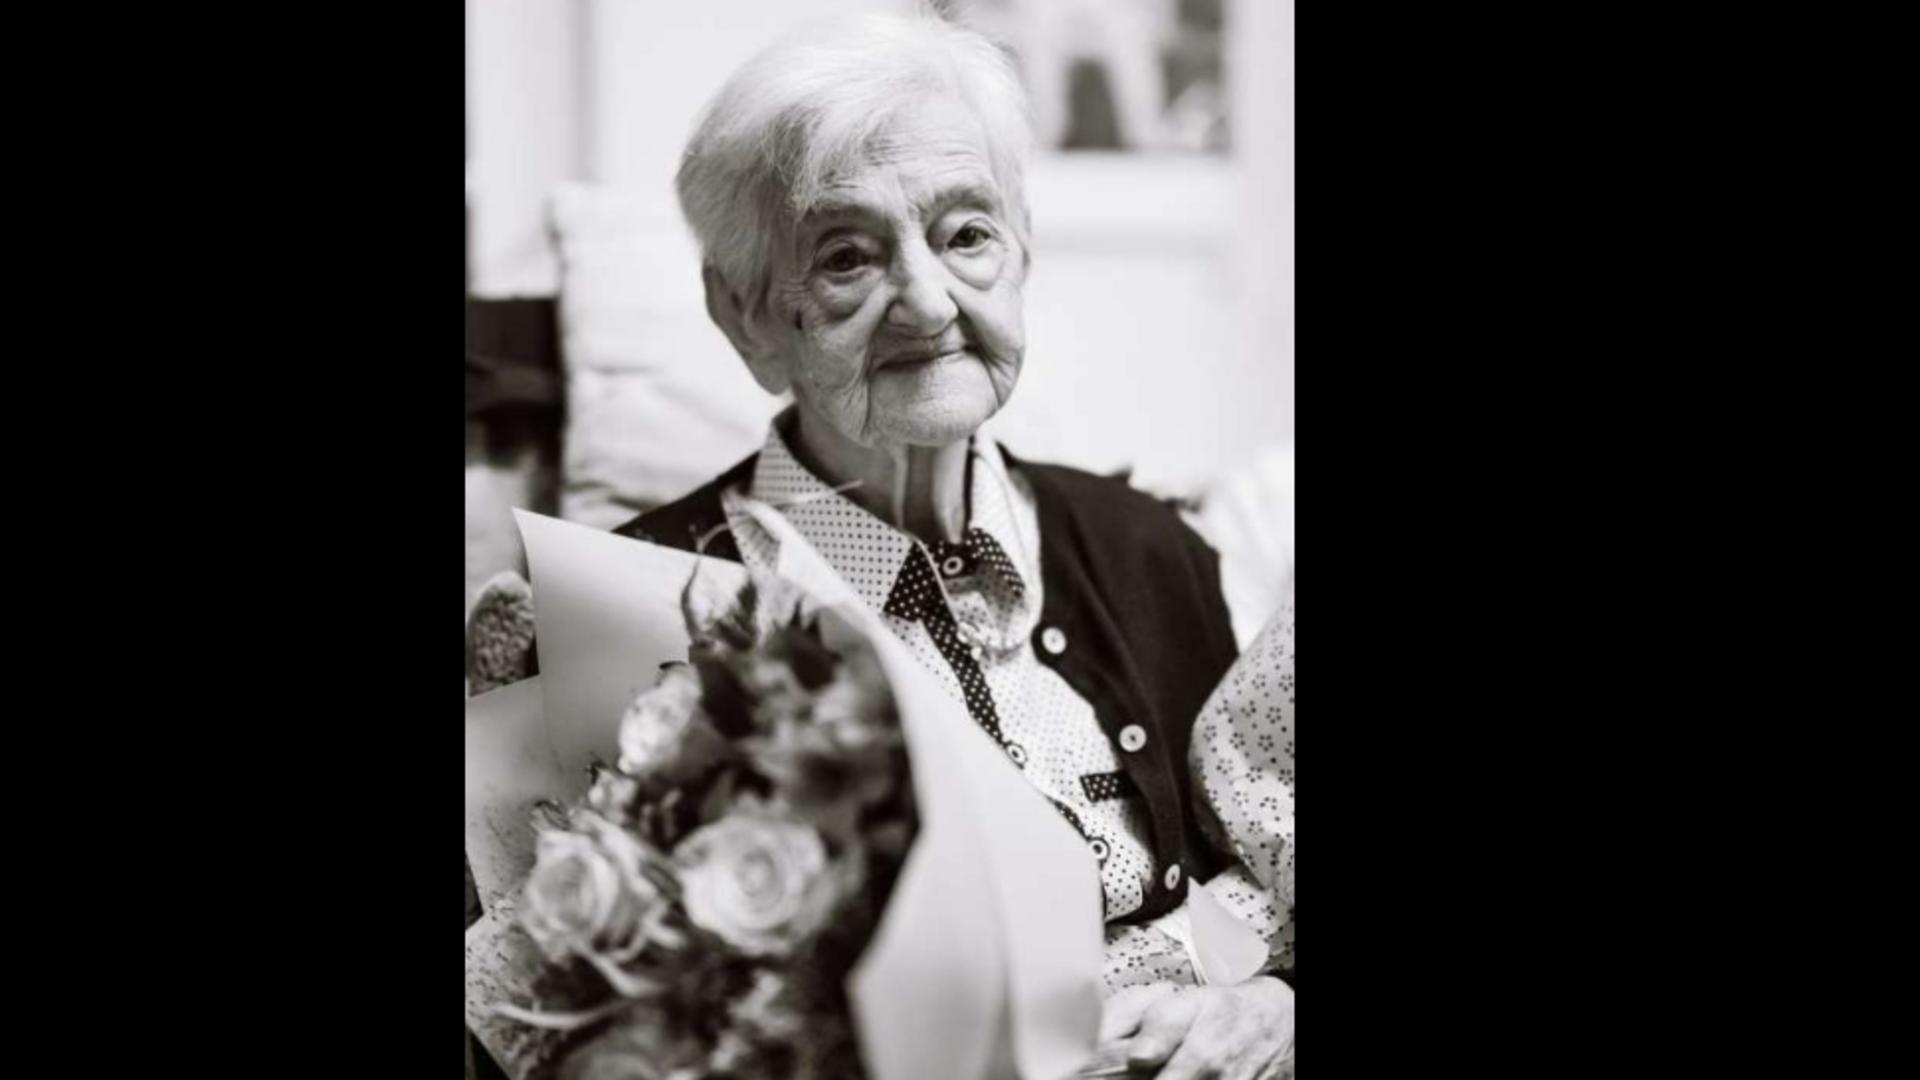 Doliu imens în Târgu Mures: Singurul supravieţuitor al lagărului Auschwitz-Birkenau, Zsuzsa Diamantstein, a decedat la 102 ani